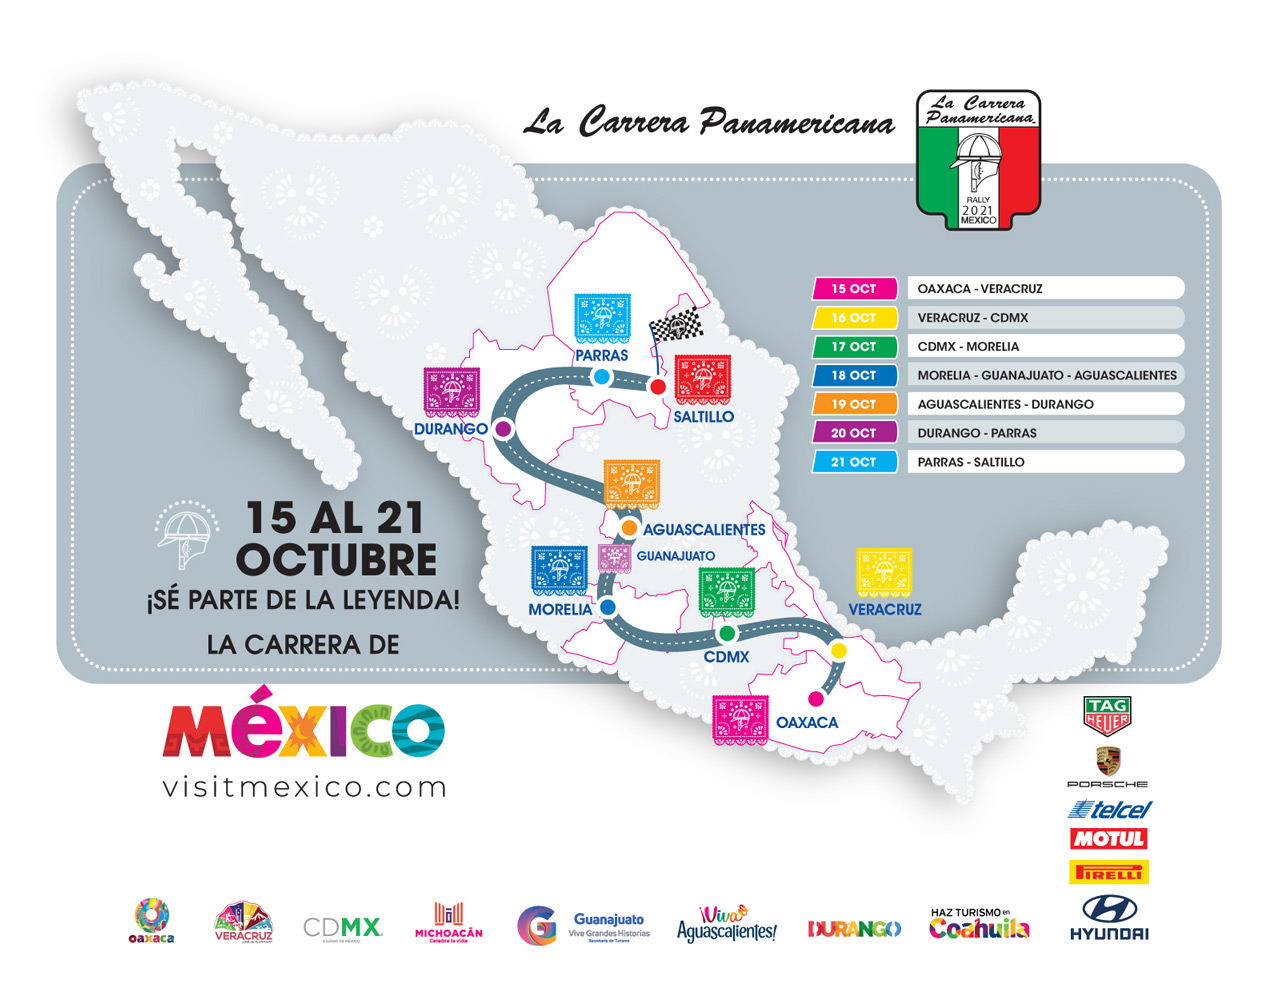 La Carrera Panamericana Confirma la Ruta de su Edición No. 34 que se Llevará a Cabo del 15 al 21 de Octubre